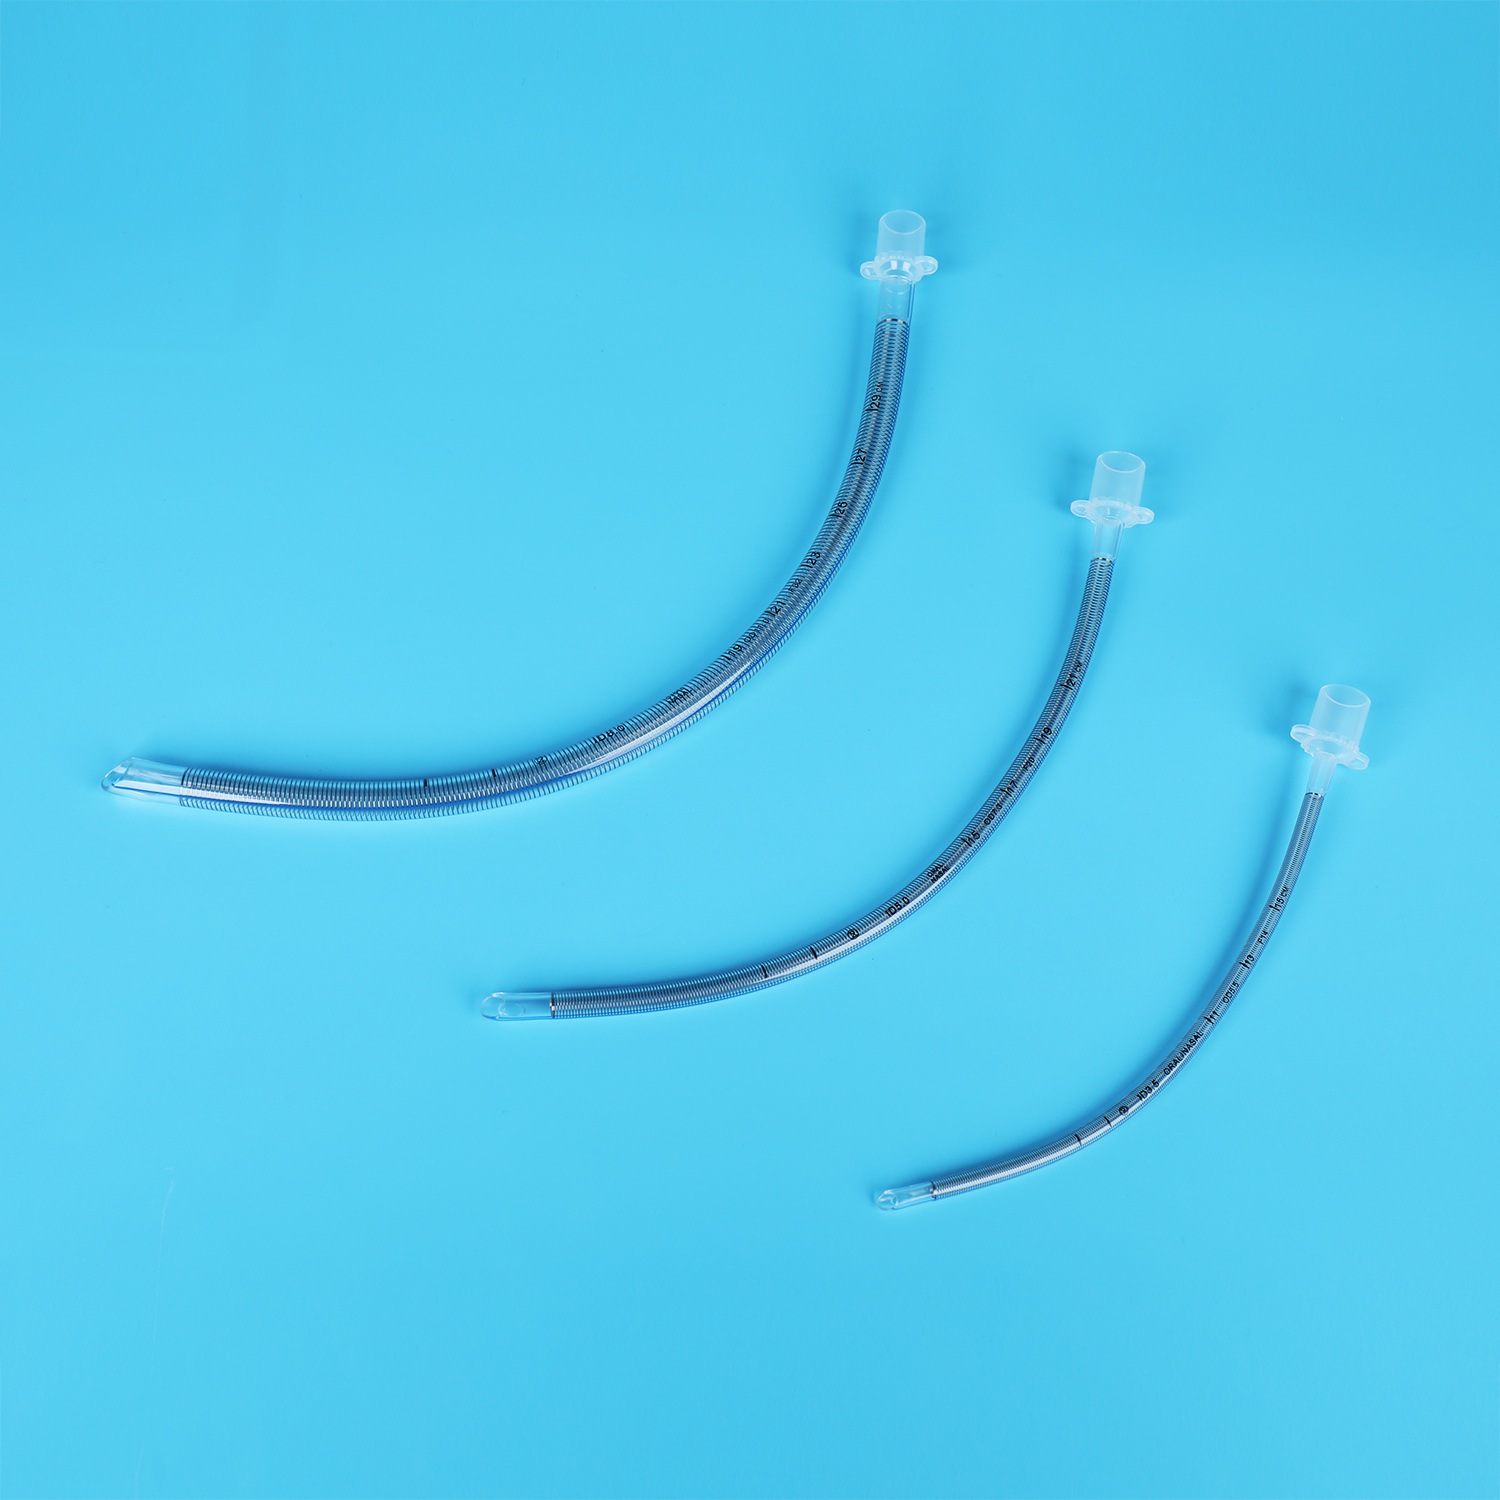 Tube endotrachéal blindé/renforcé flexible Fabricant de PVC Fourniture médicale Matériel médical jetable Tube médical Embout souple flexible